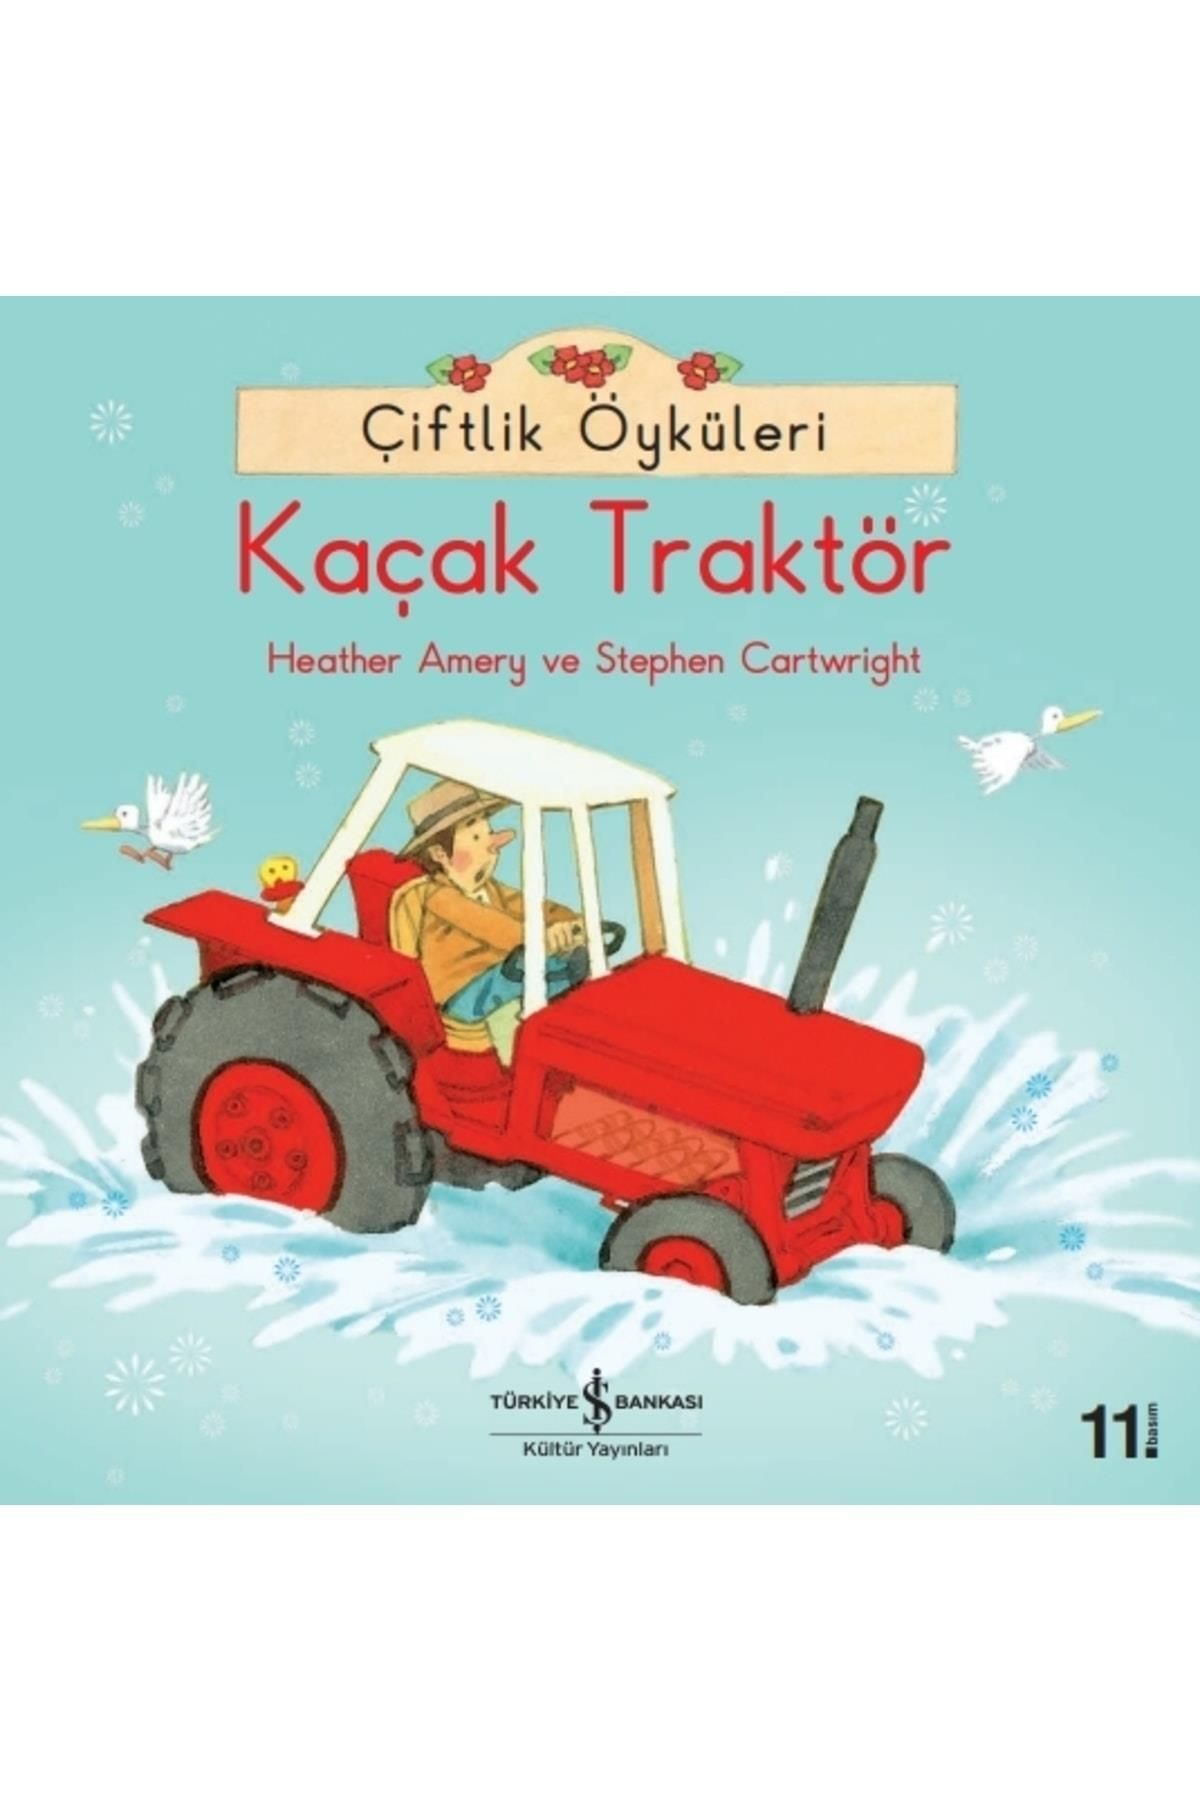 Türkiye İş Bankası Kültür Yayınları Kaçak Traktör